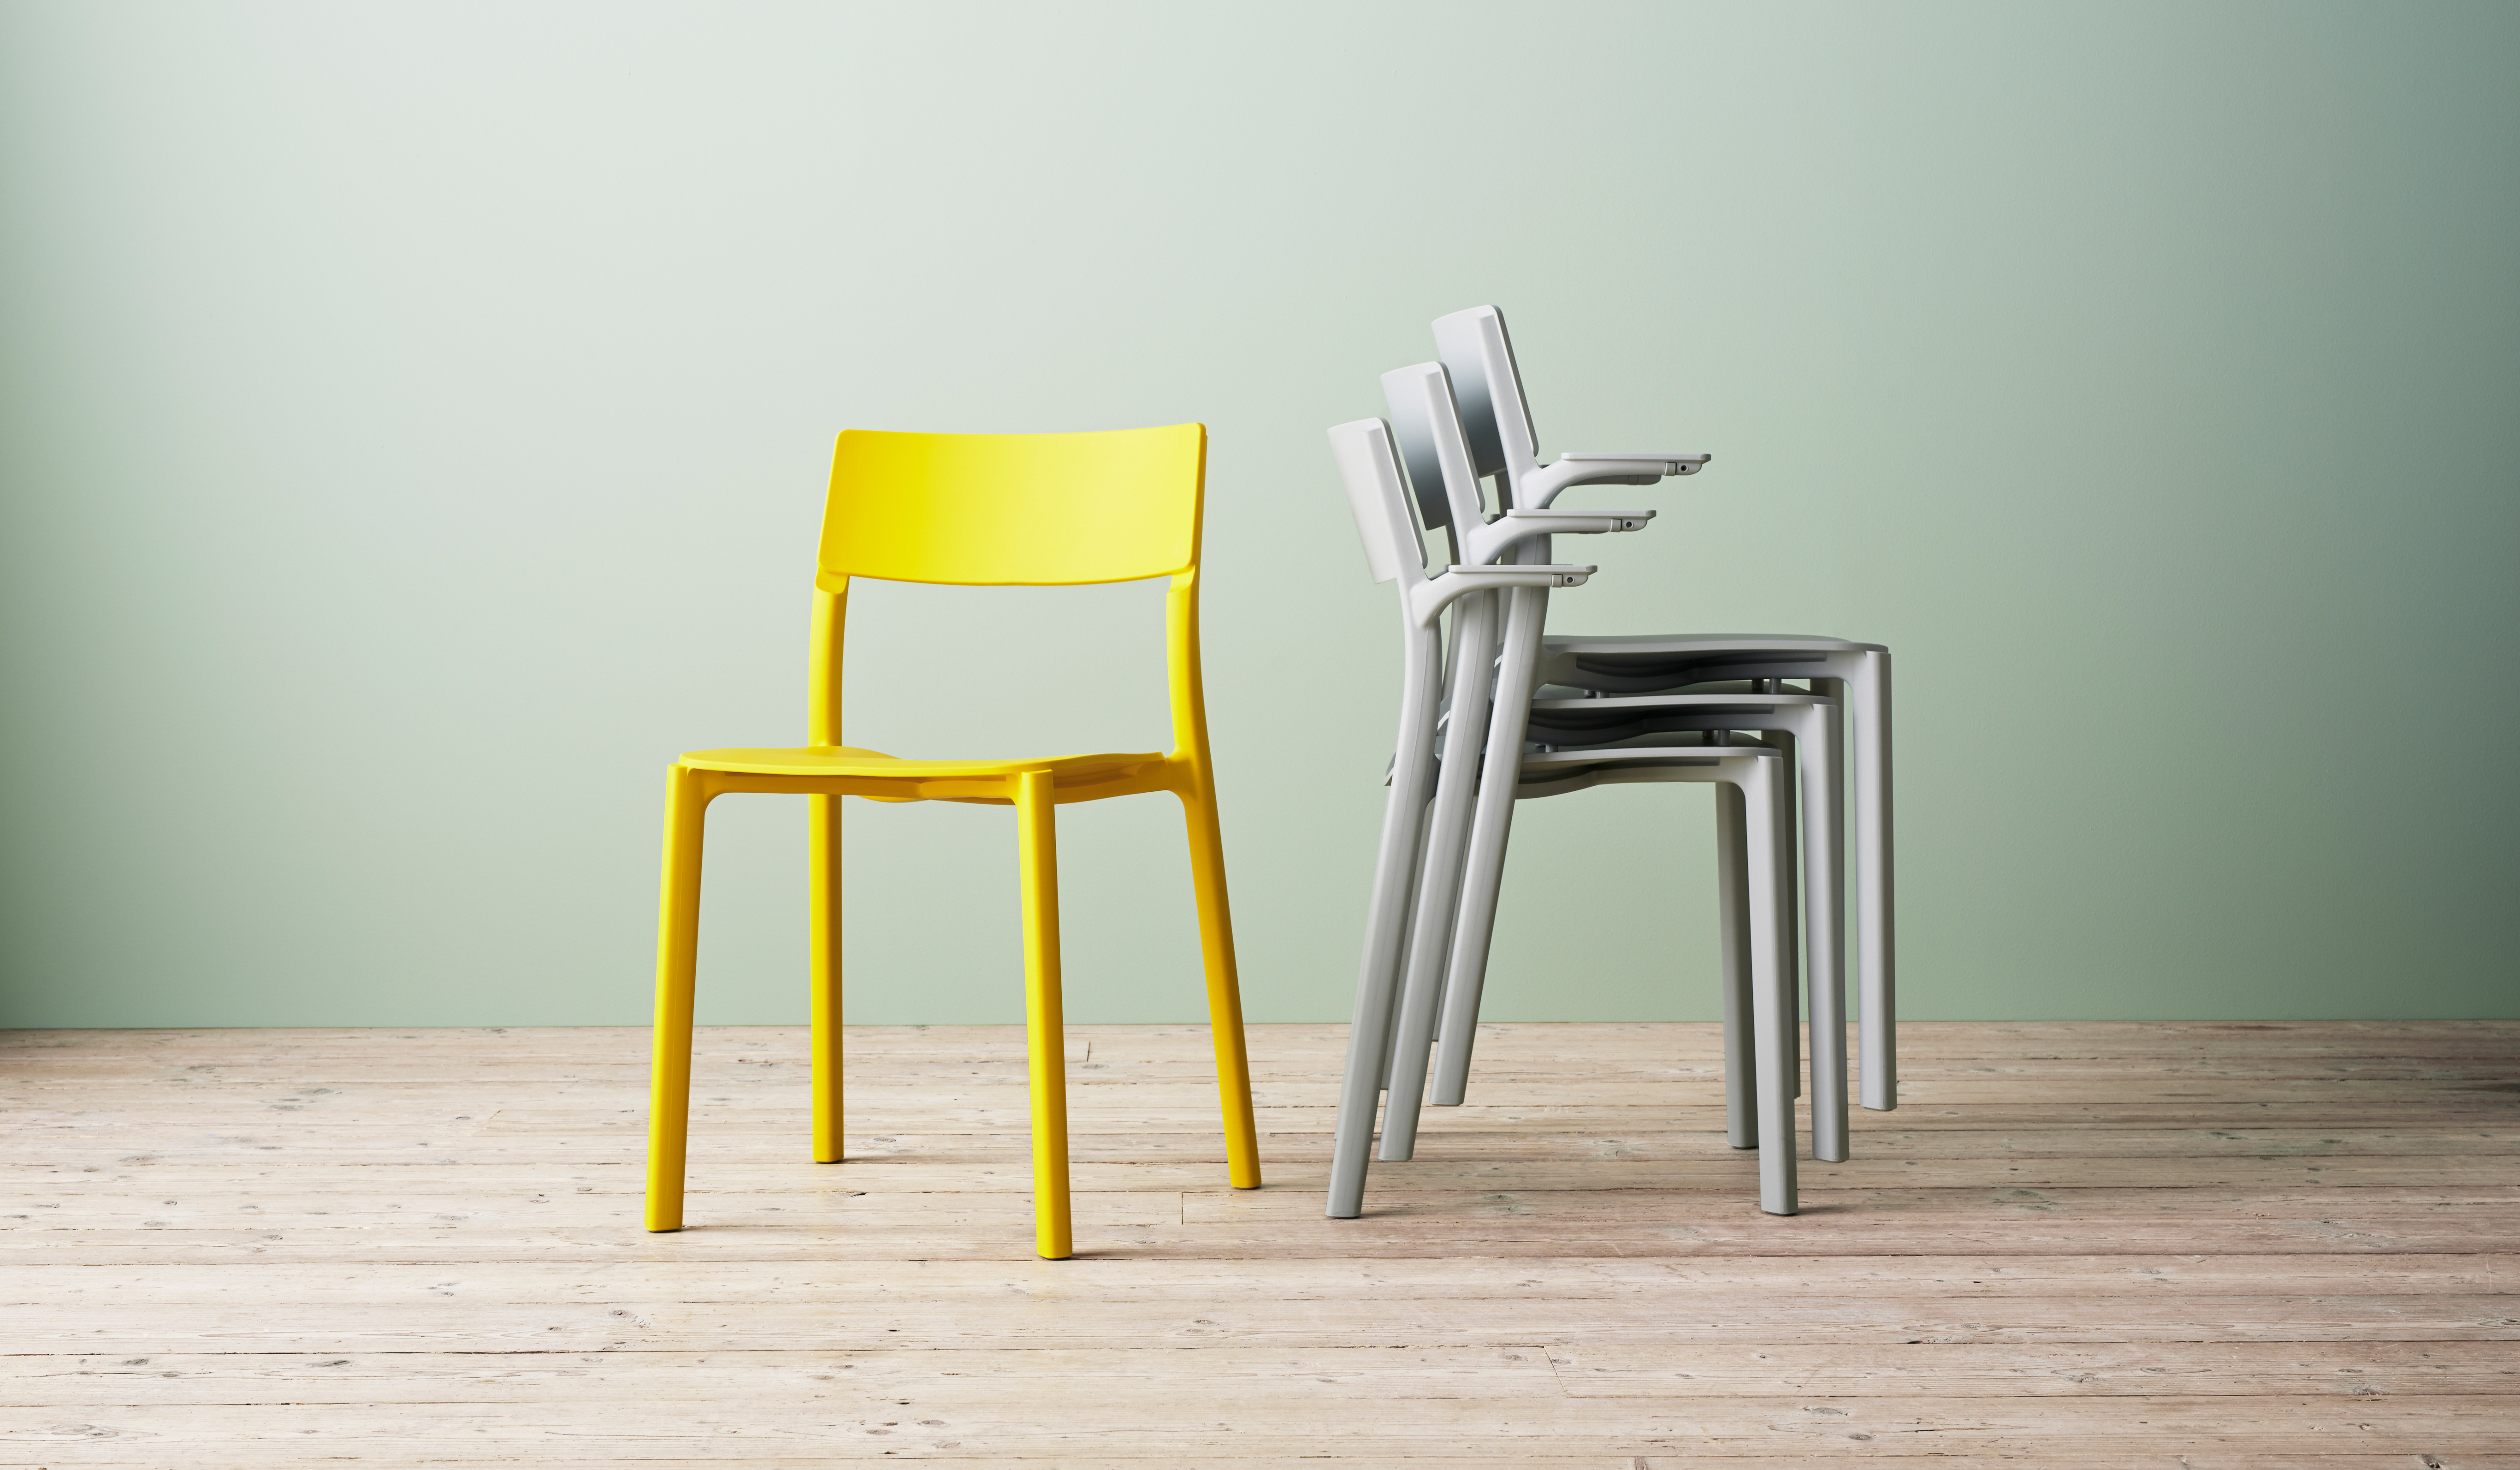 Stühle von Ikea in den Pantone-Trendfarben des Jahres 2021: Illuminating und Ultimate grey